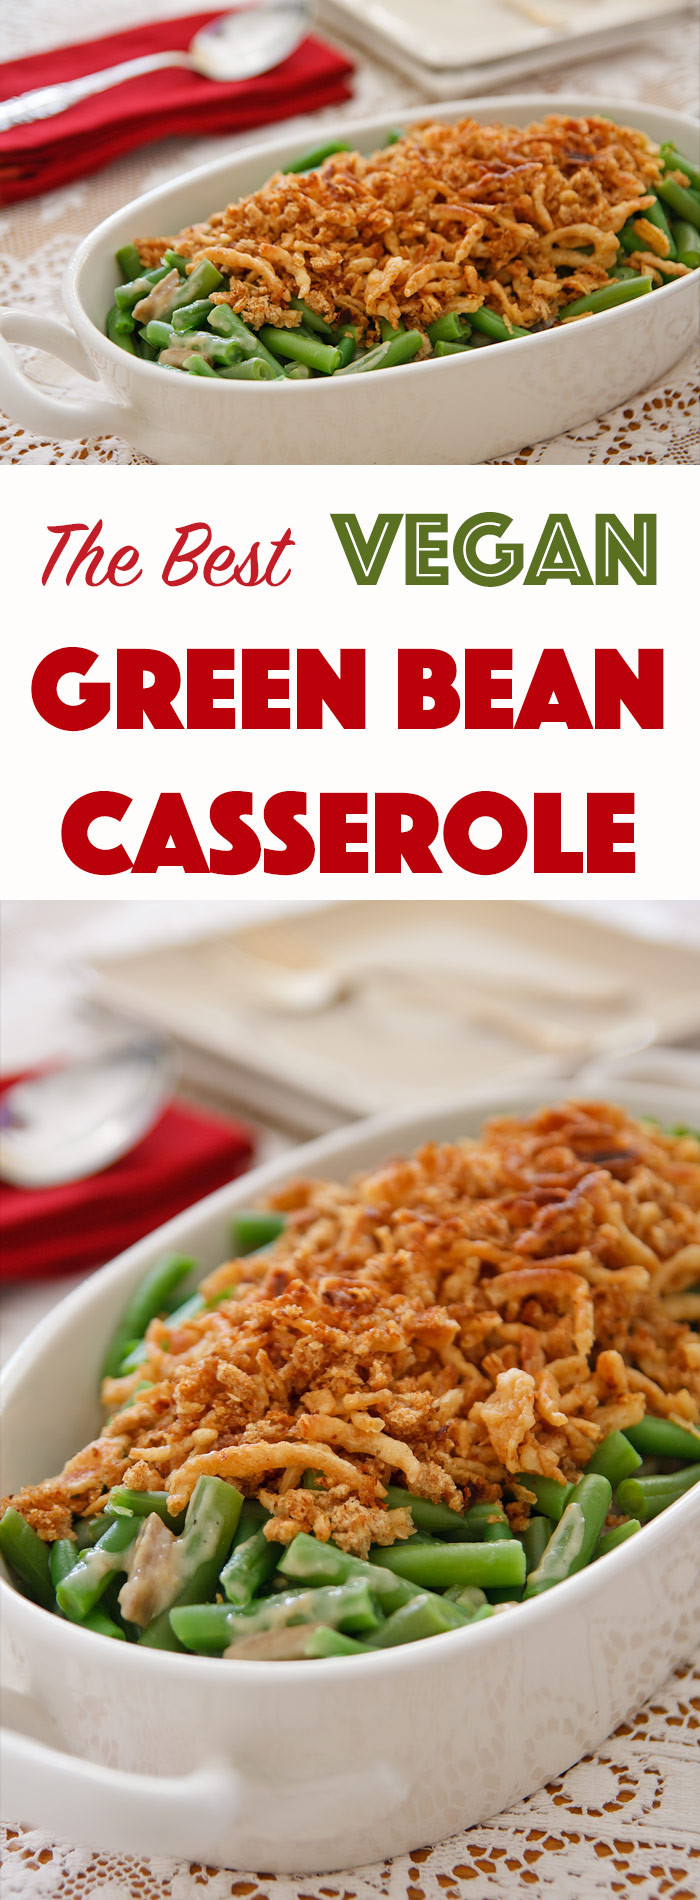 Vegan Green Beans Recipes
 The Best Vegan Green Bean Casserole